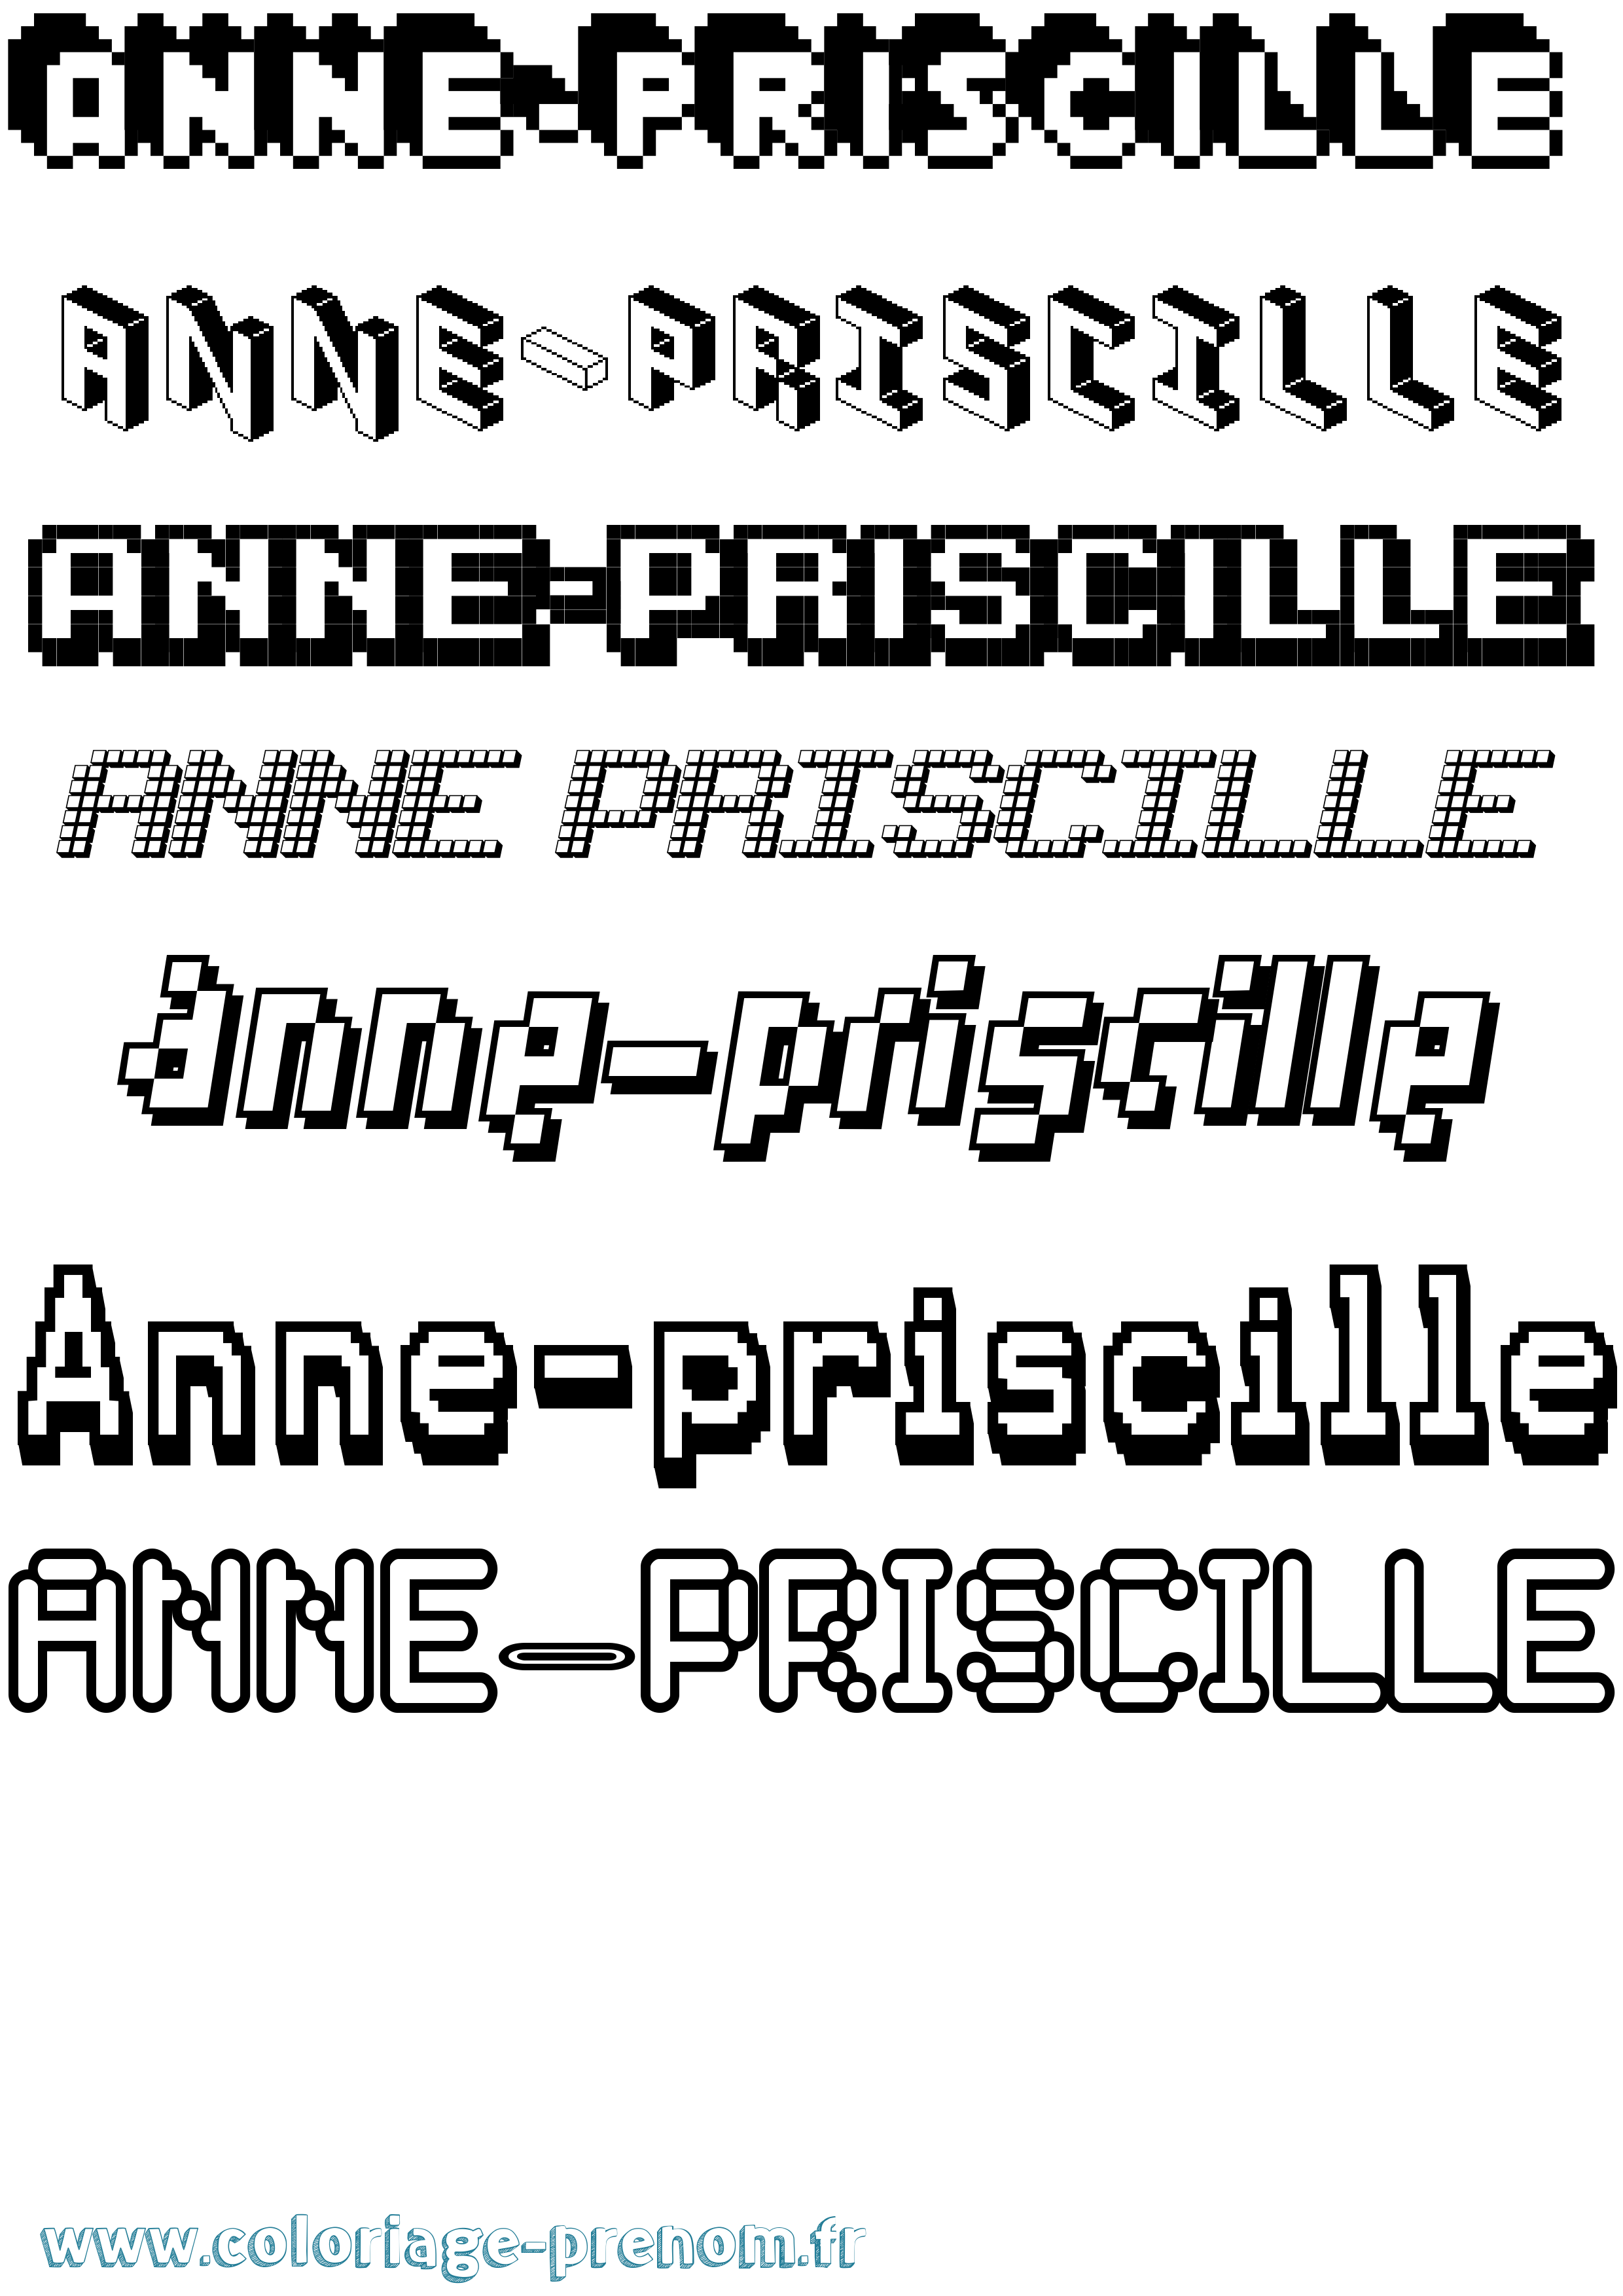 Coloriage prénom Anne-Priscille Pixel